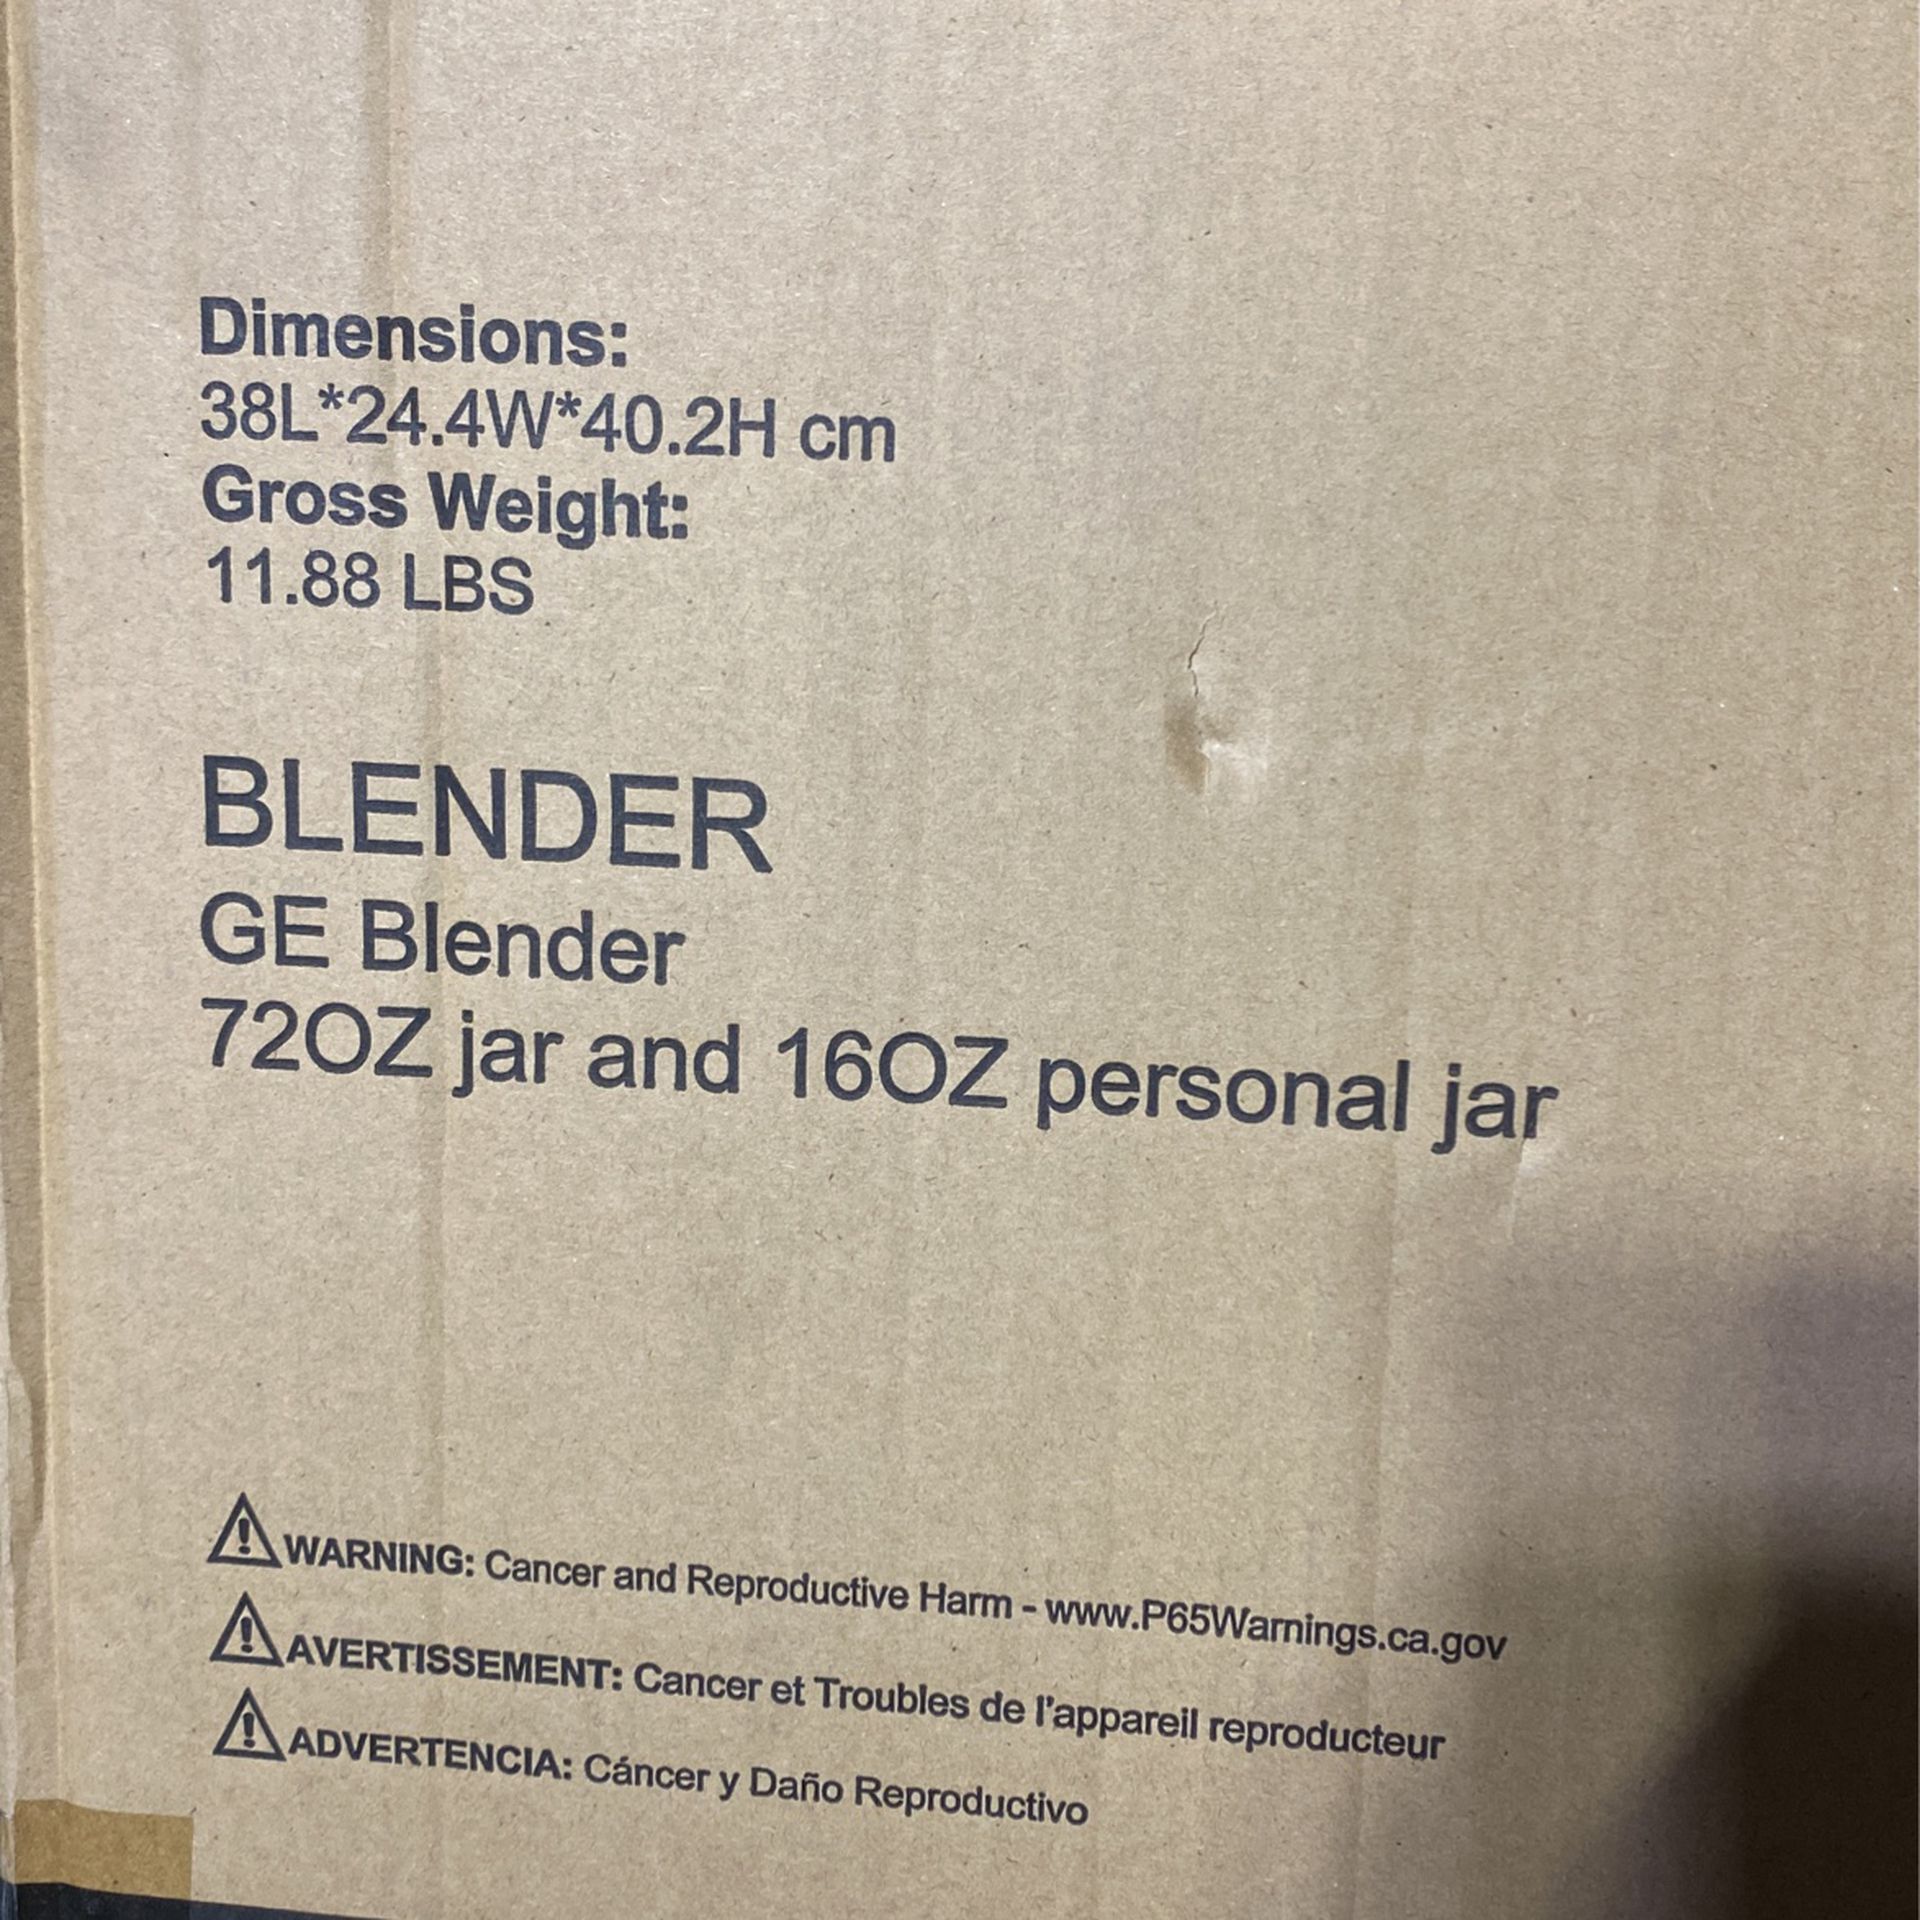 GE Blender for Sale in Teaneck, NJ - OfferUp